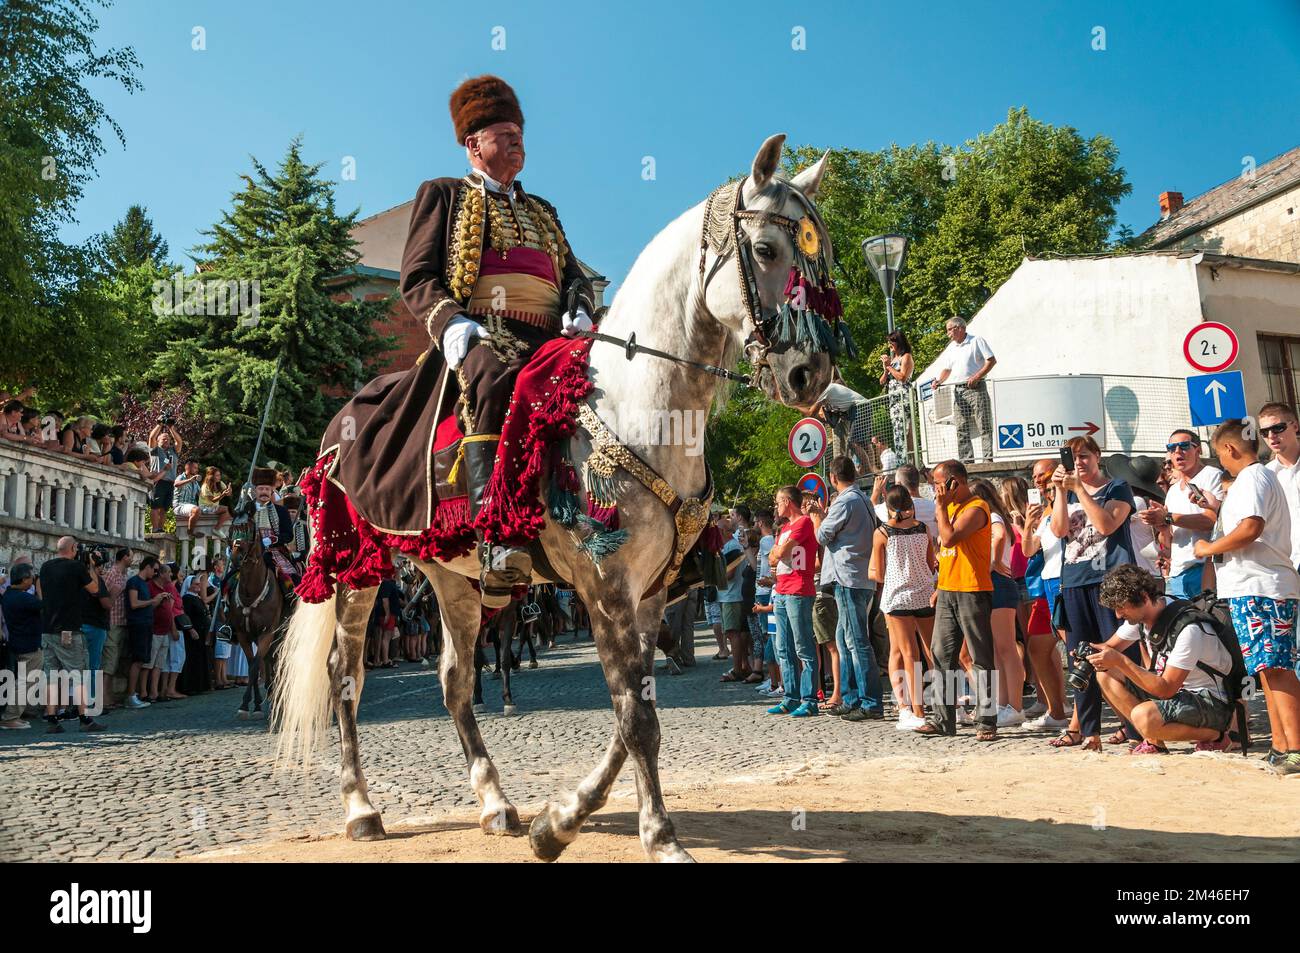 Ante Vucic, Meister der 300. alka von sinj, Kommandeur der Prozession, reitet mit 300 auf seinem Pferd. Das Alka-Festival in Signo (Sinj), Kroatien, fand am 09 statt. Stockfoto